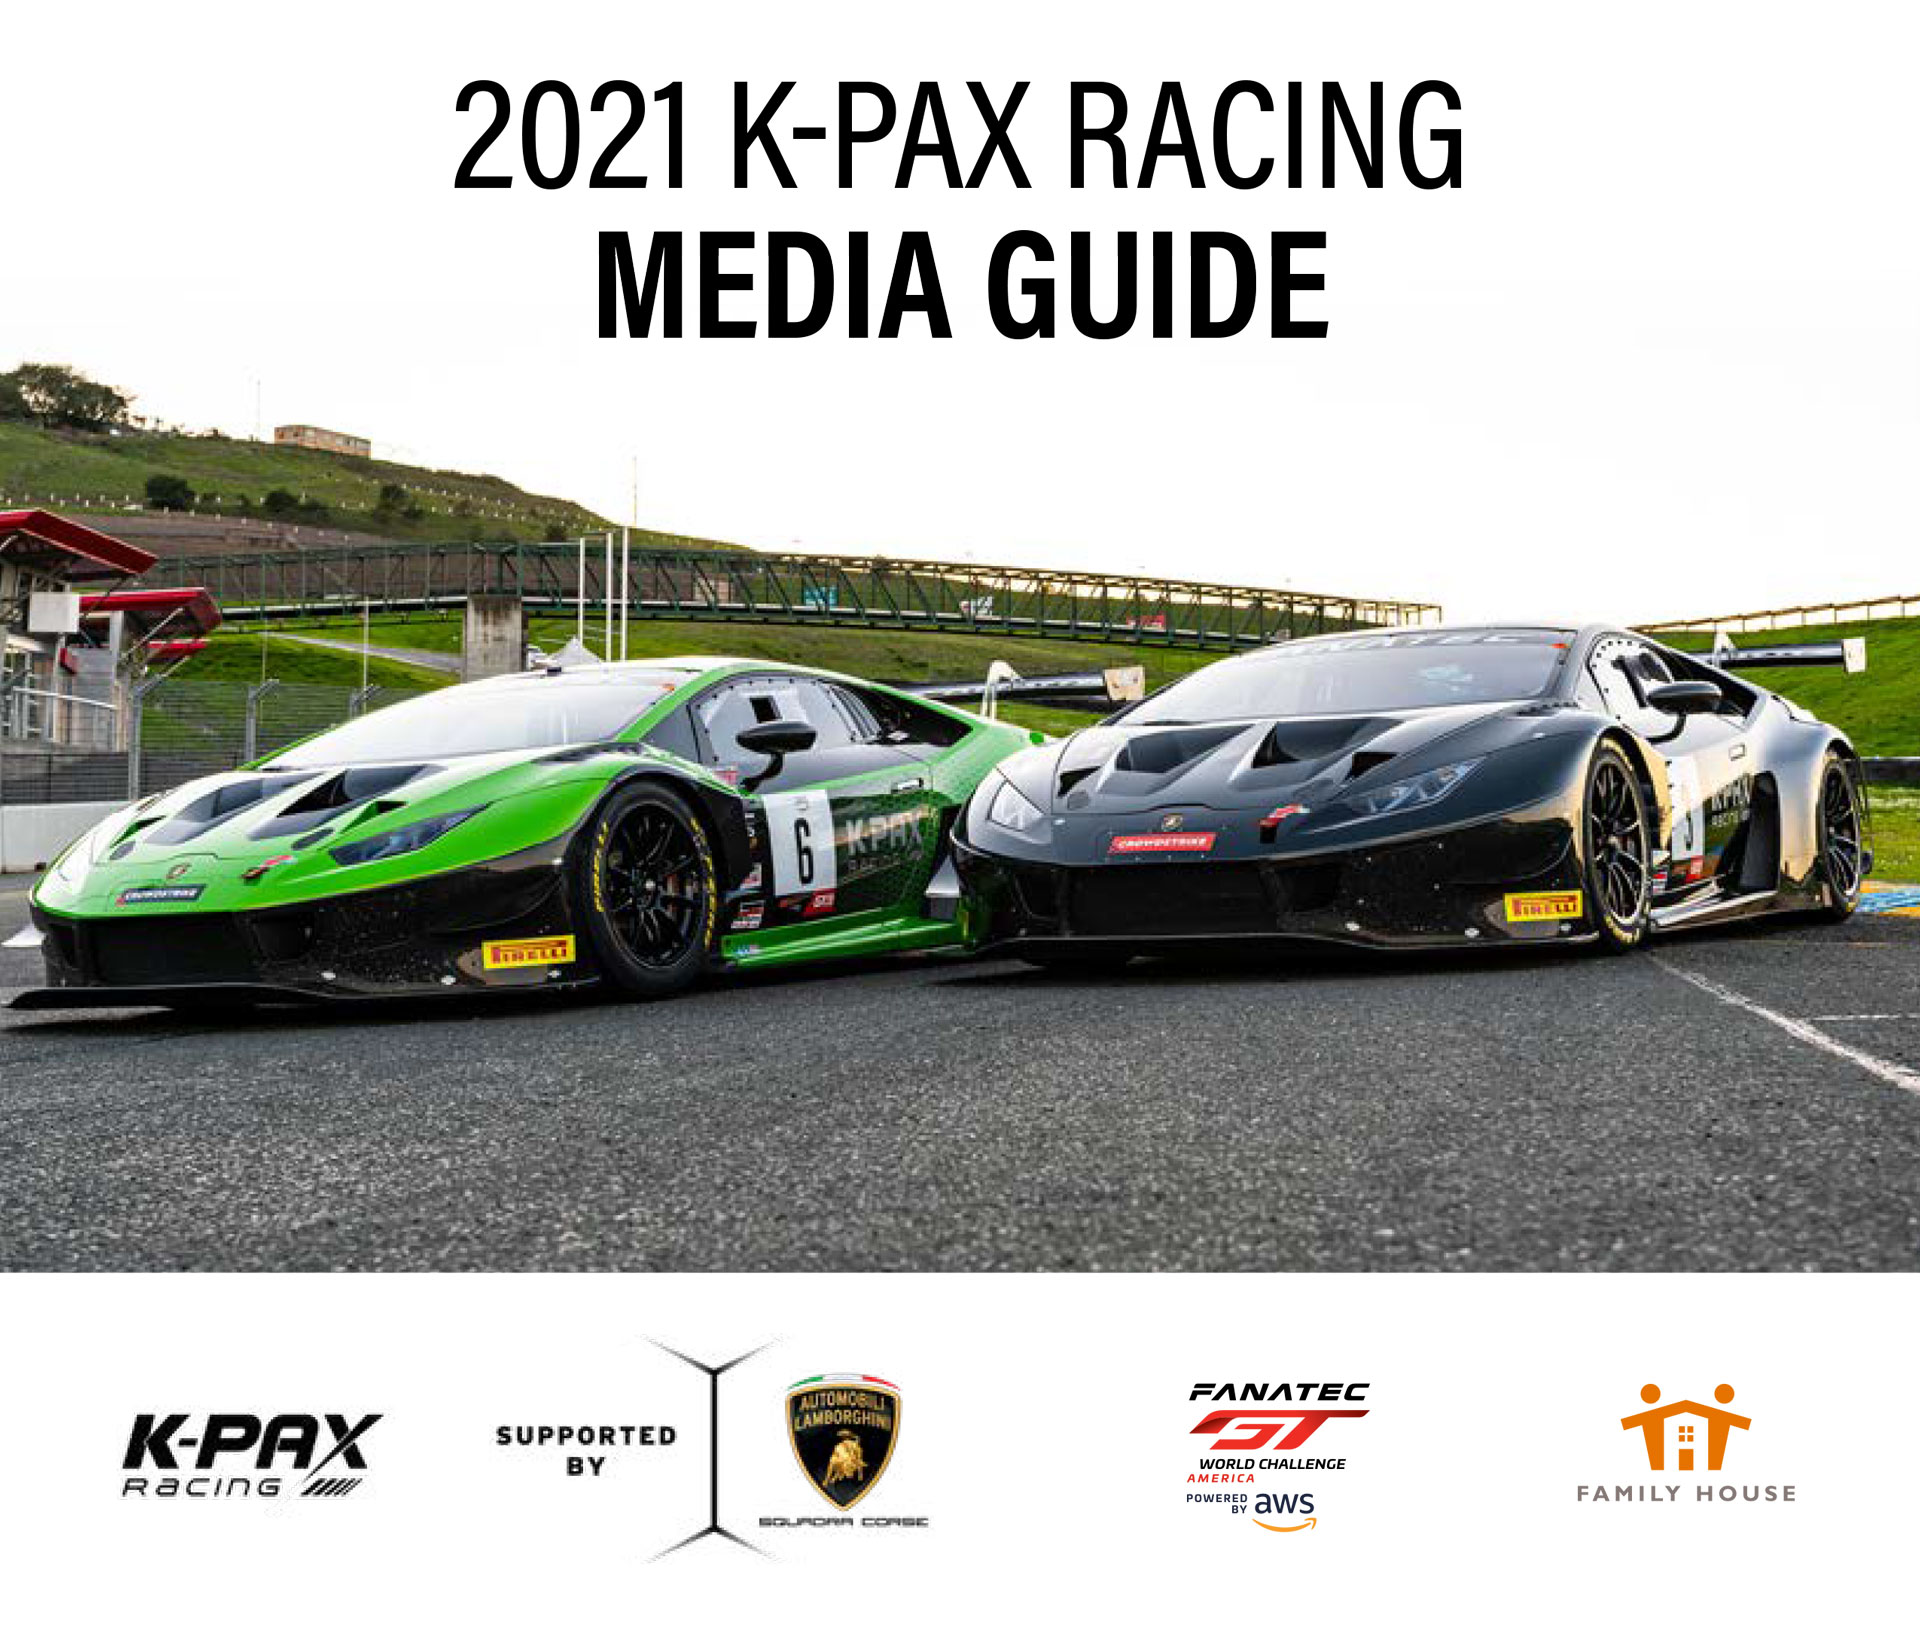 2021 K-PAX Media Guide